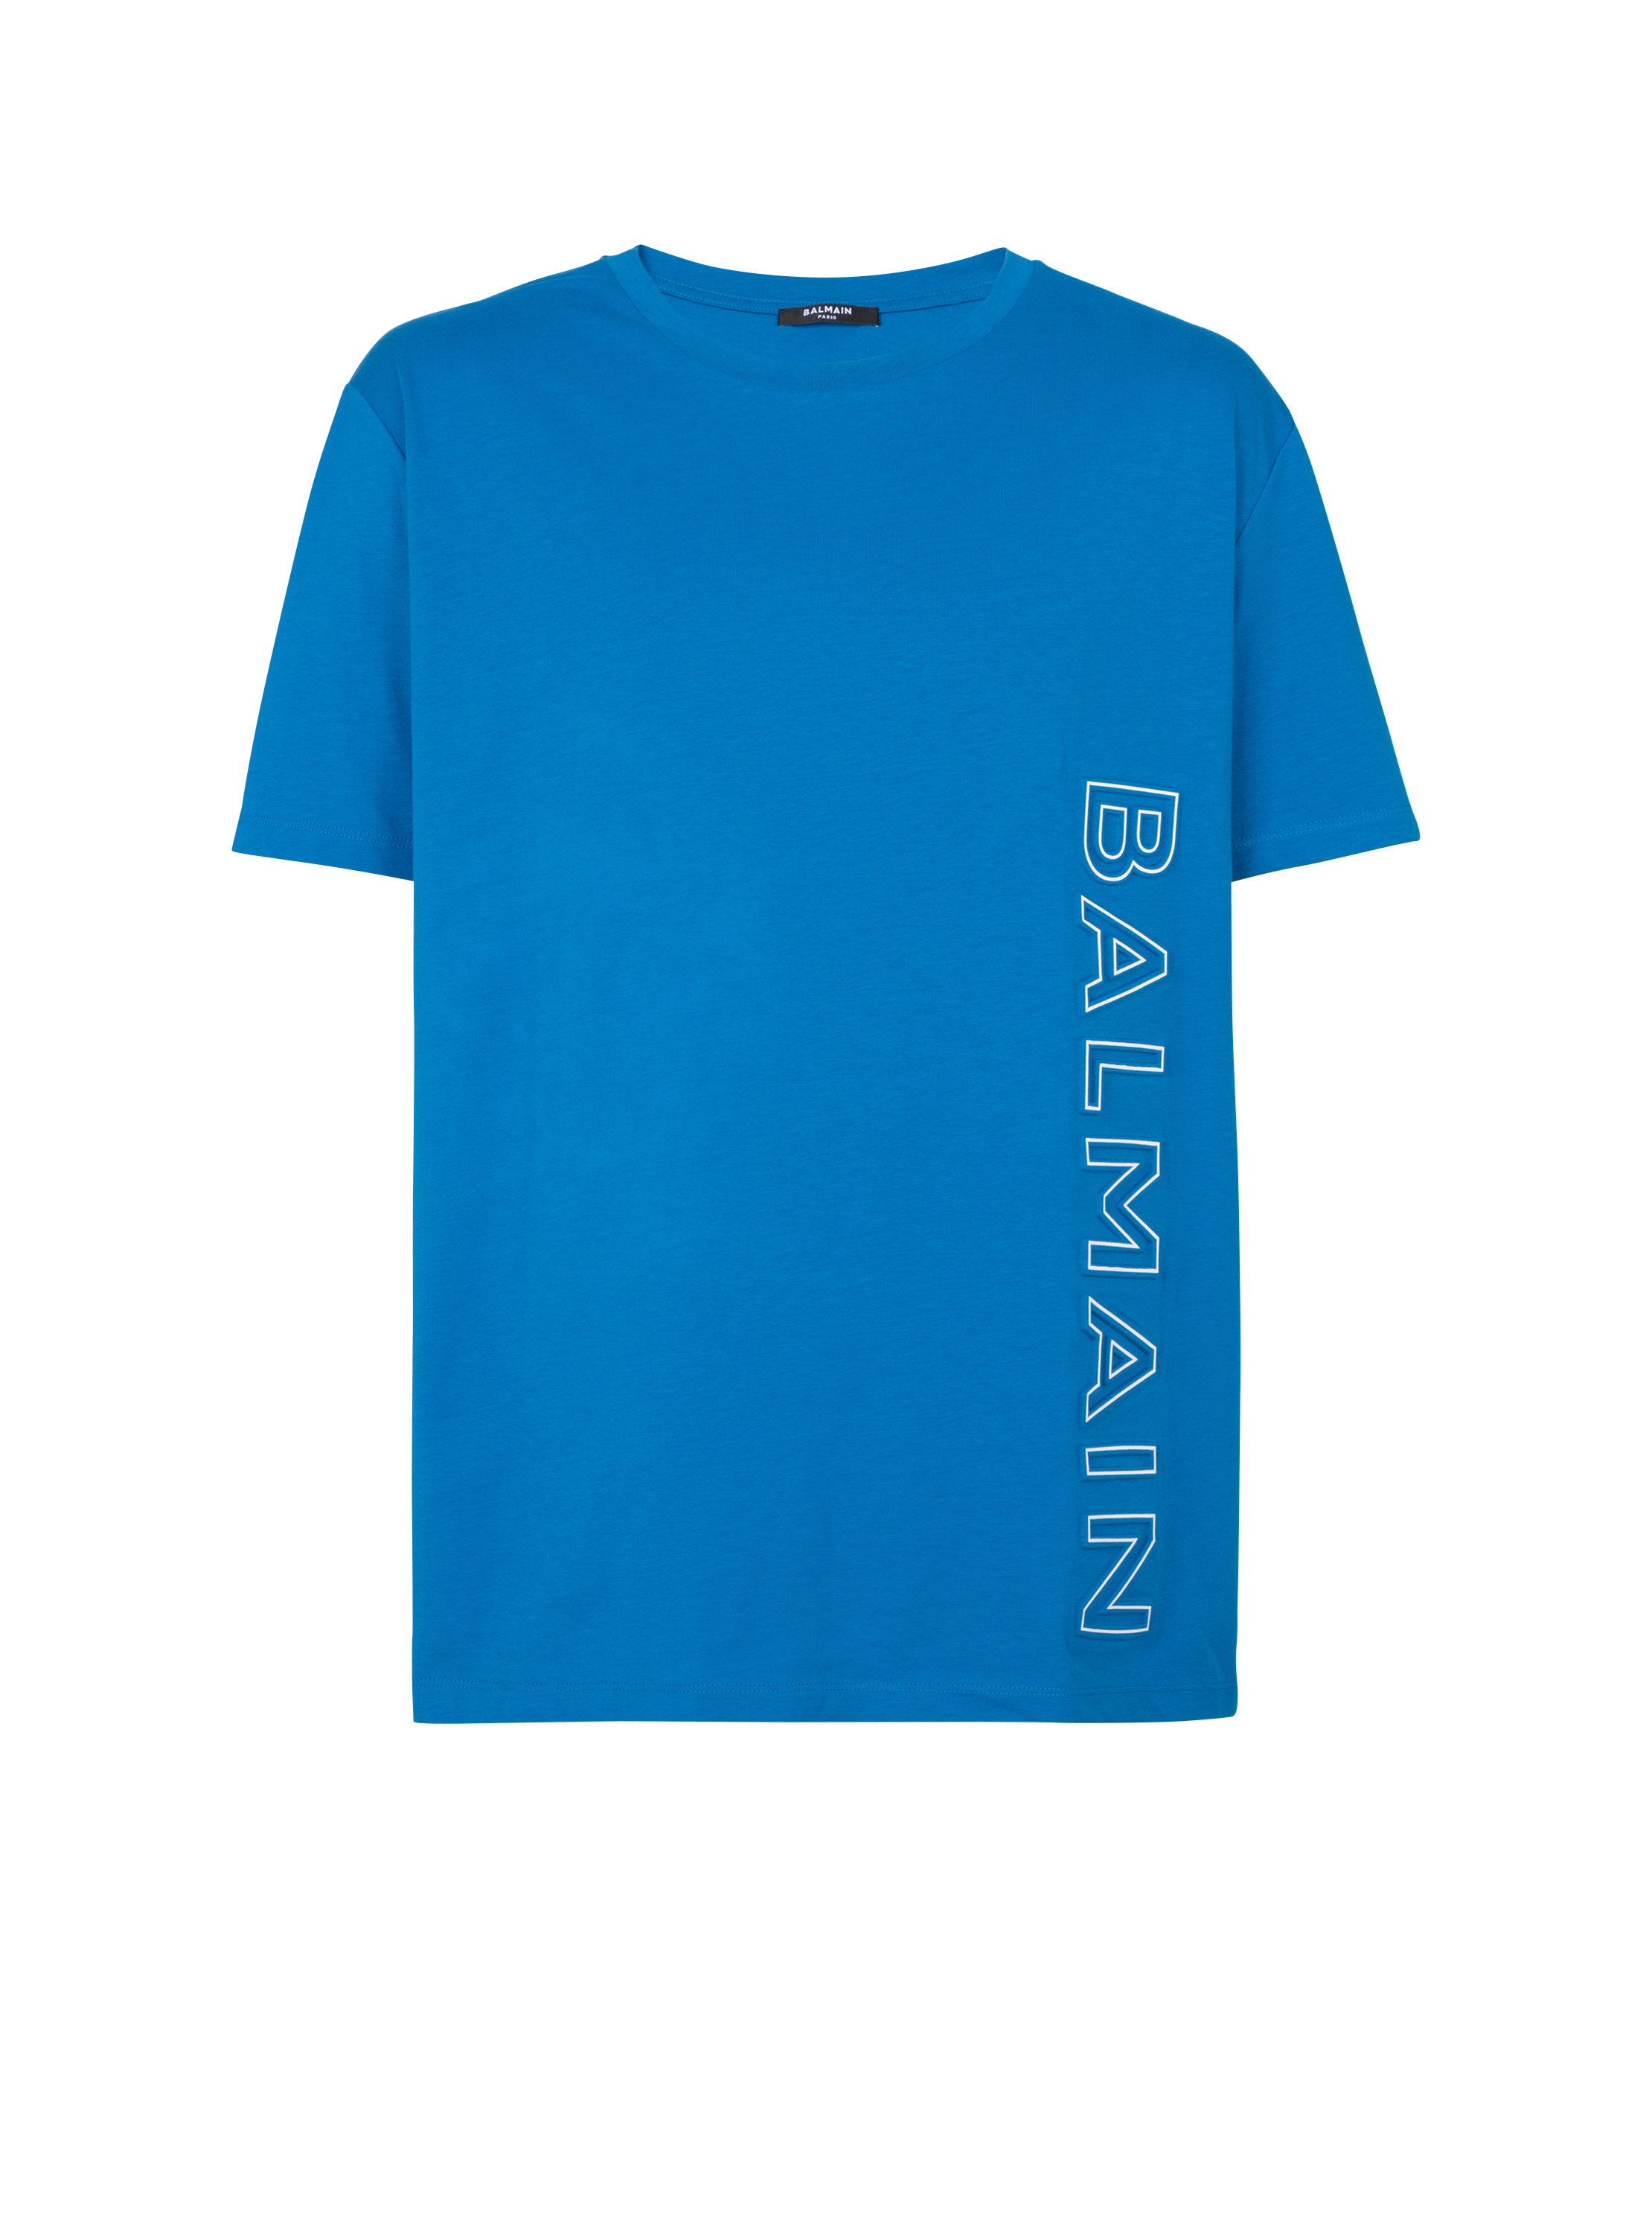 Embossed Balmain T-shirt, blue, hi-res